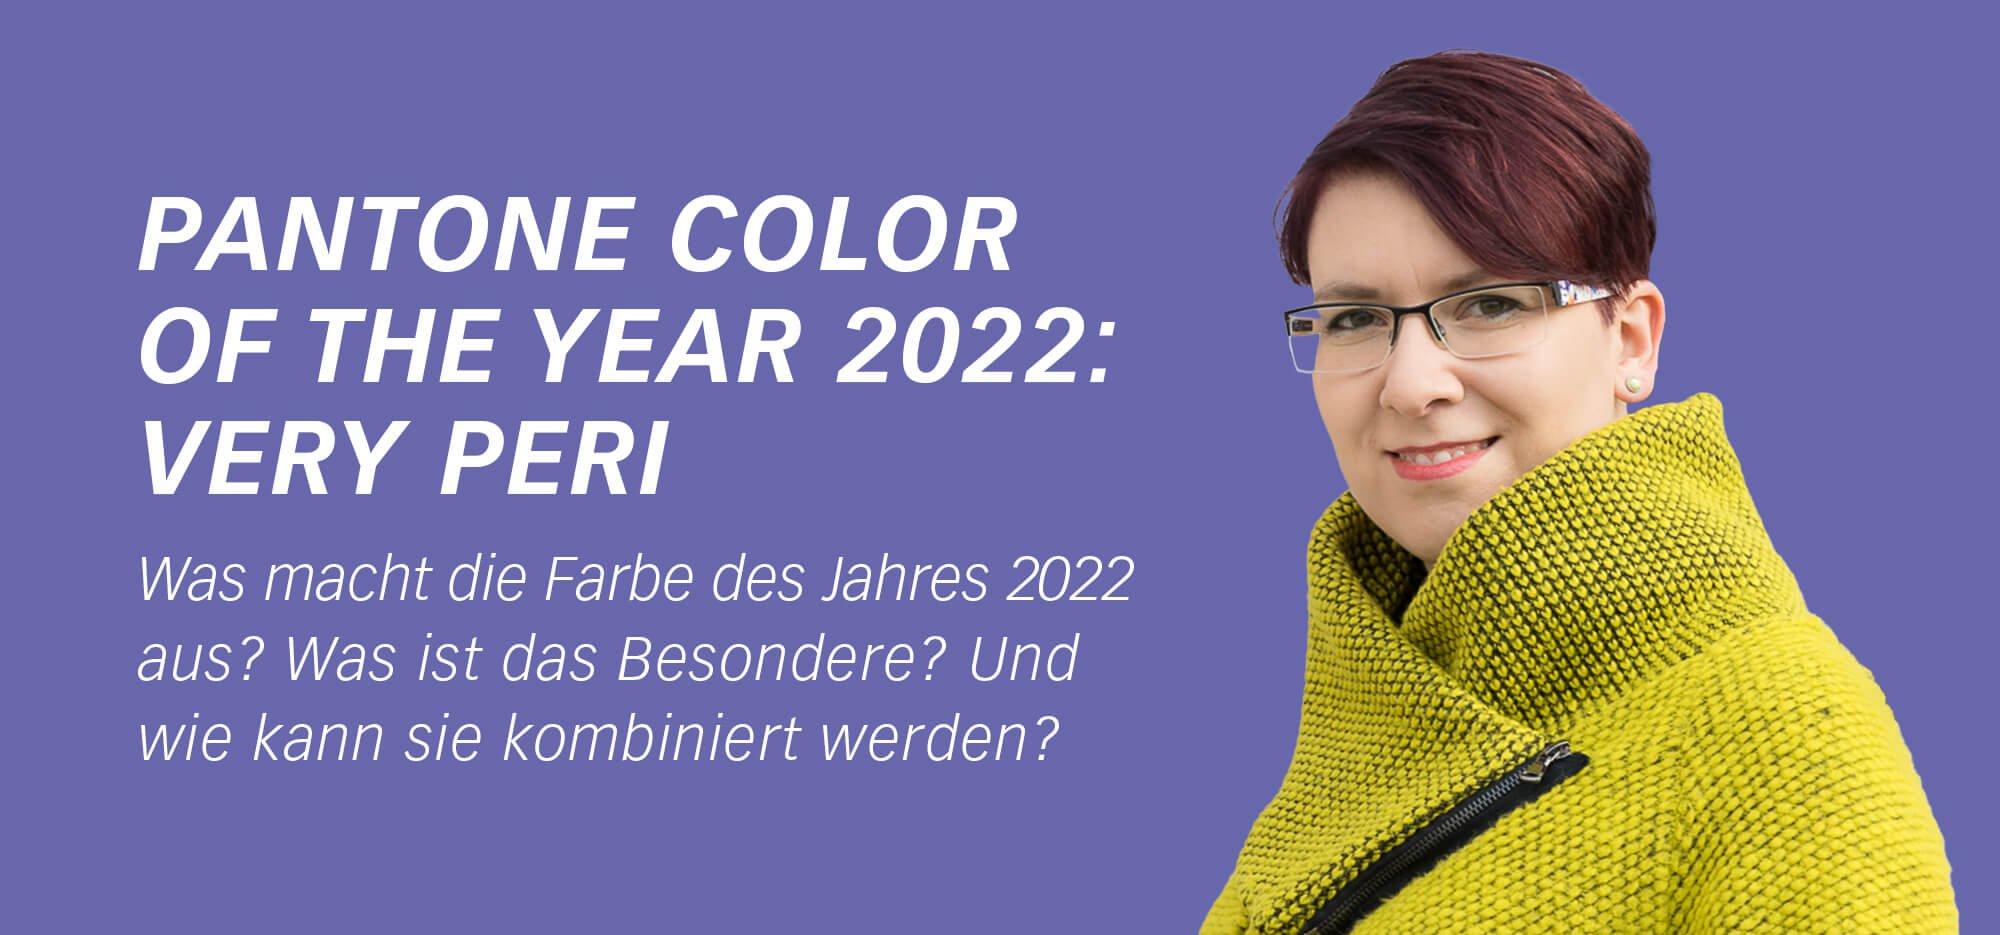 Pantone Farbe des Jahres 2022 Very Peri – die Besonderheiten der Farbe erklärt